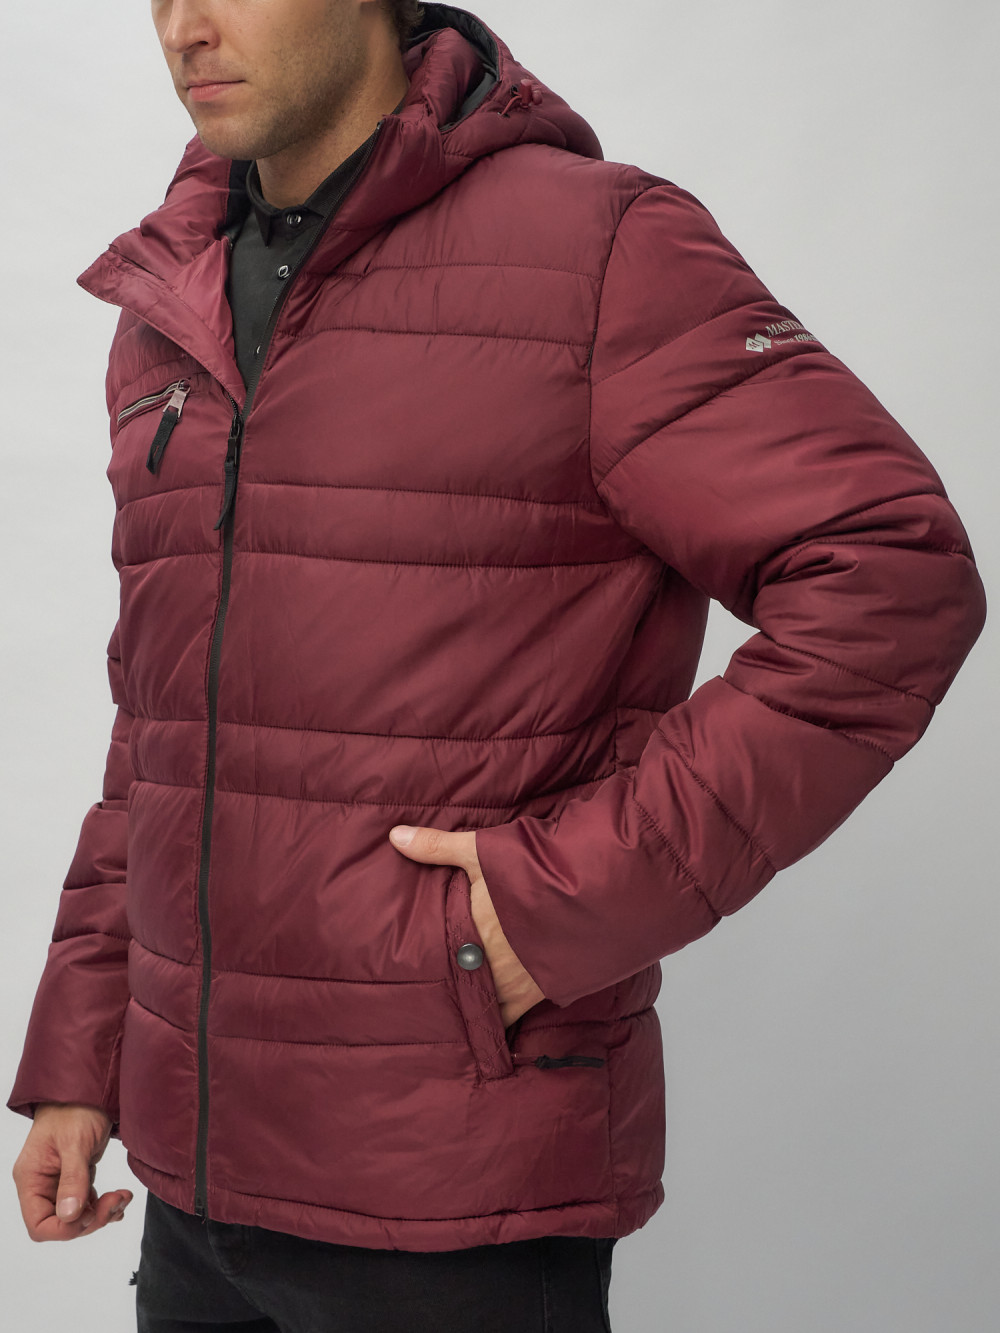 Купить куртку мужскую спортивную весеннюю оптом от производителя недорого в Москве 62175Bo 1